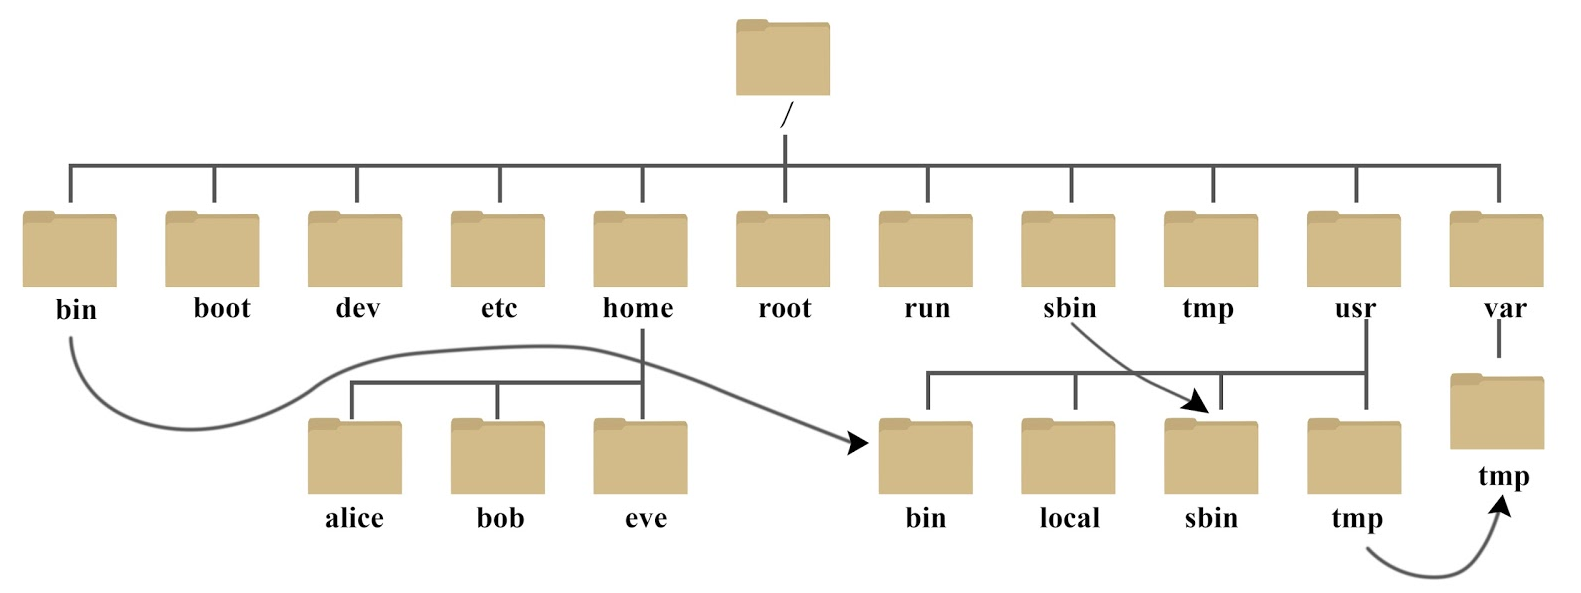 linux目录结构